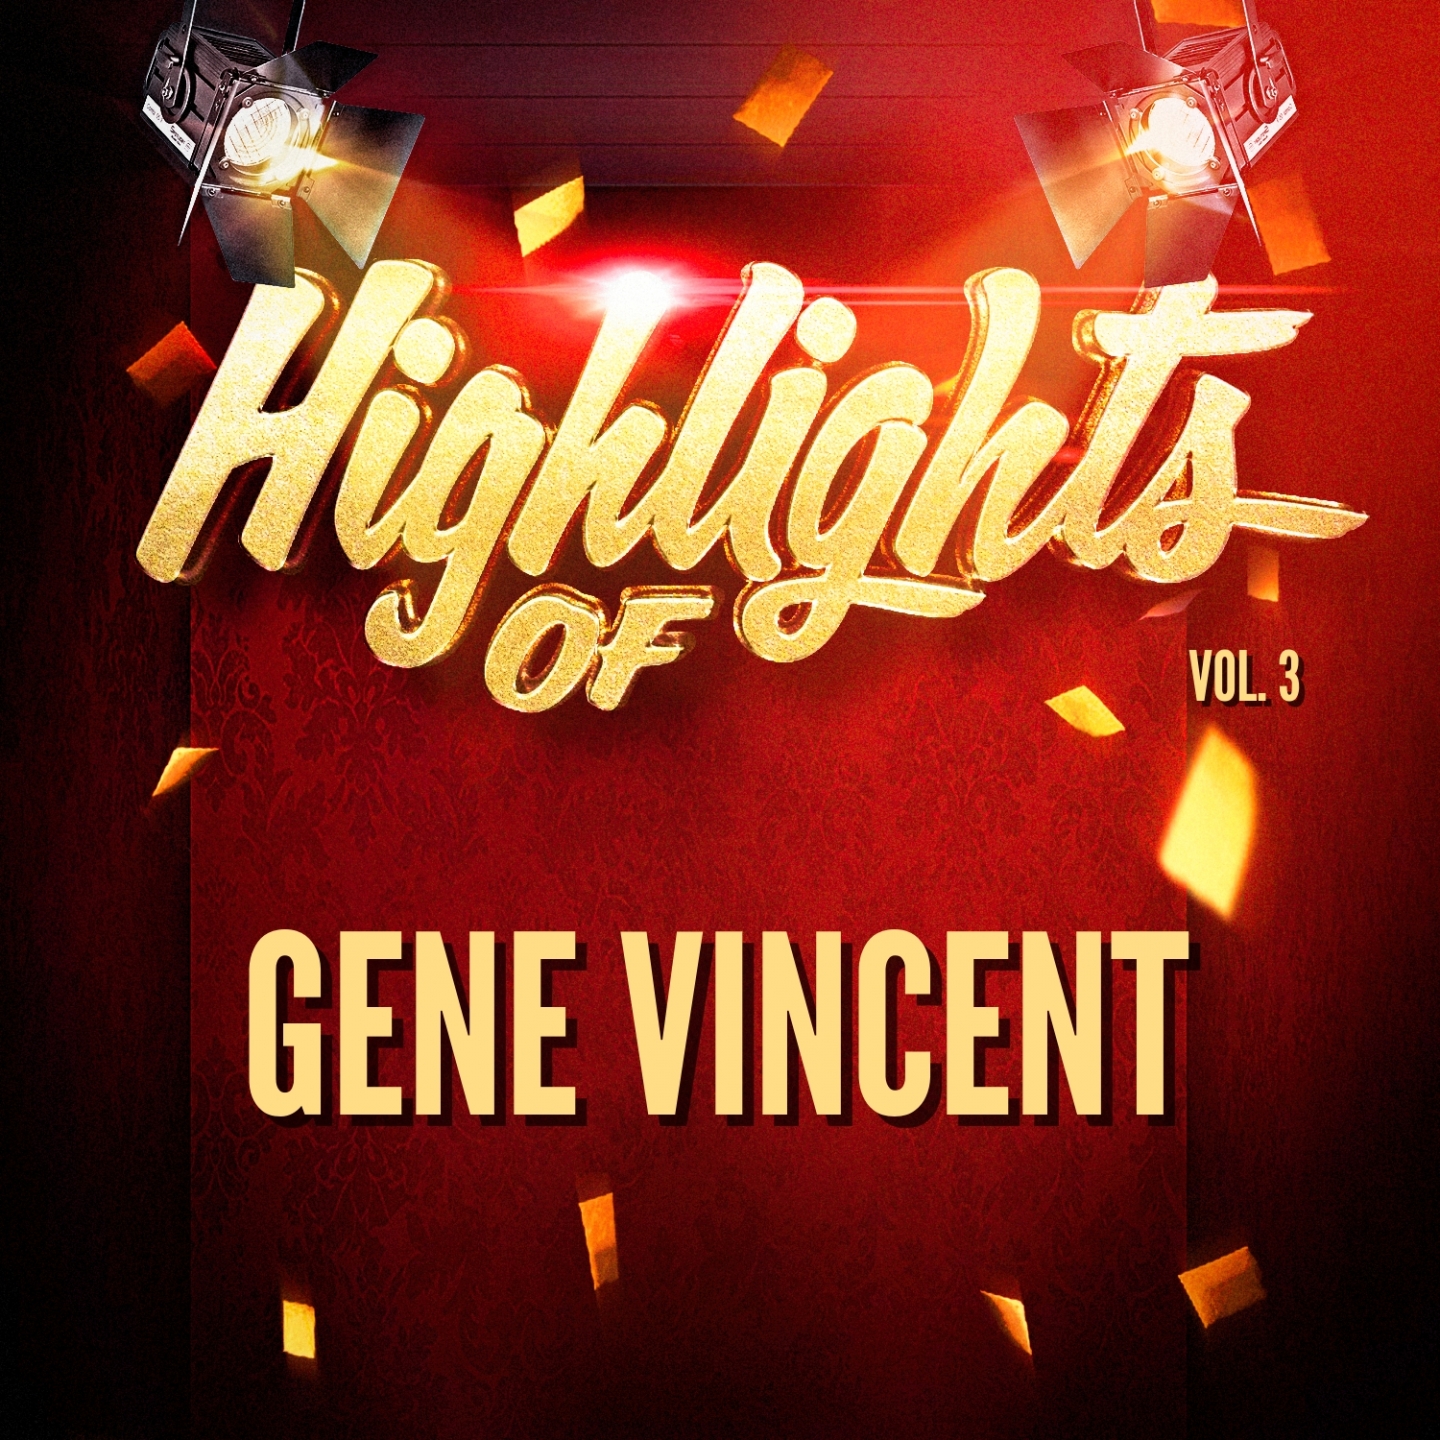 Highlights of Gene Vincent, Vol. 3